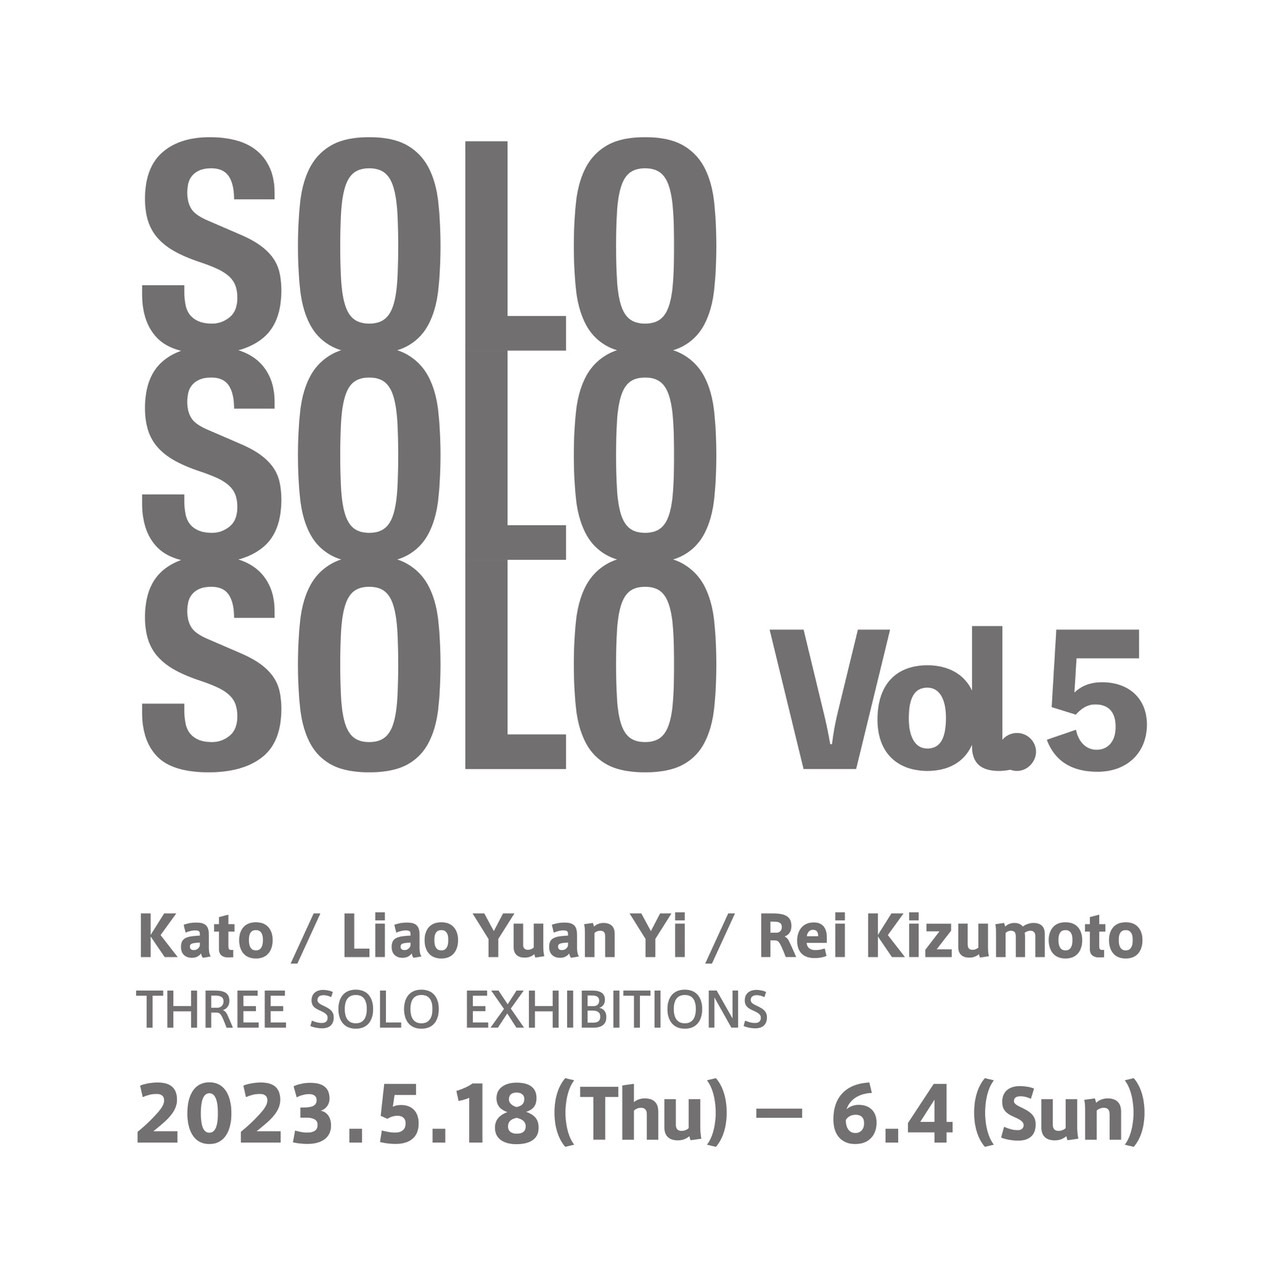 カトウ×廖元溢×木津本麗 個展「SOLO SOLO SOLO vol.5」/ Kato×Liao Yuan Yi×Rei Kizumoto Three Solo Exhibitions “SOLO SOLO SOLO vol.5”